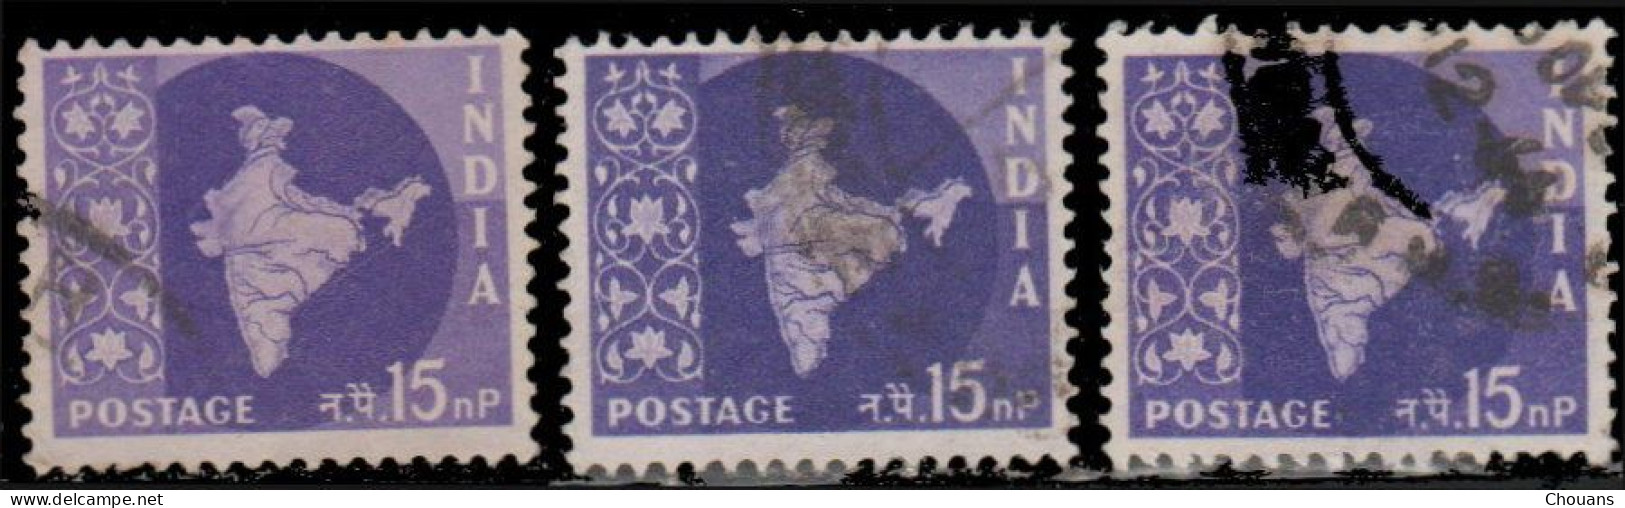 Inde 1957. ~ YT 74/82 - Carte De L'Inde (10 V.) - Oblitérés